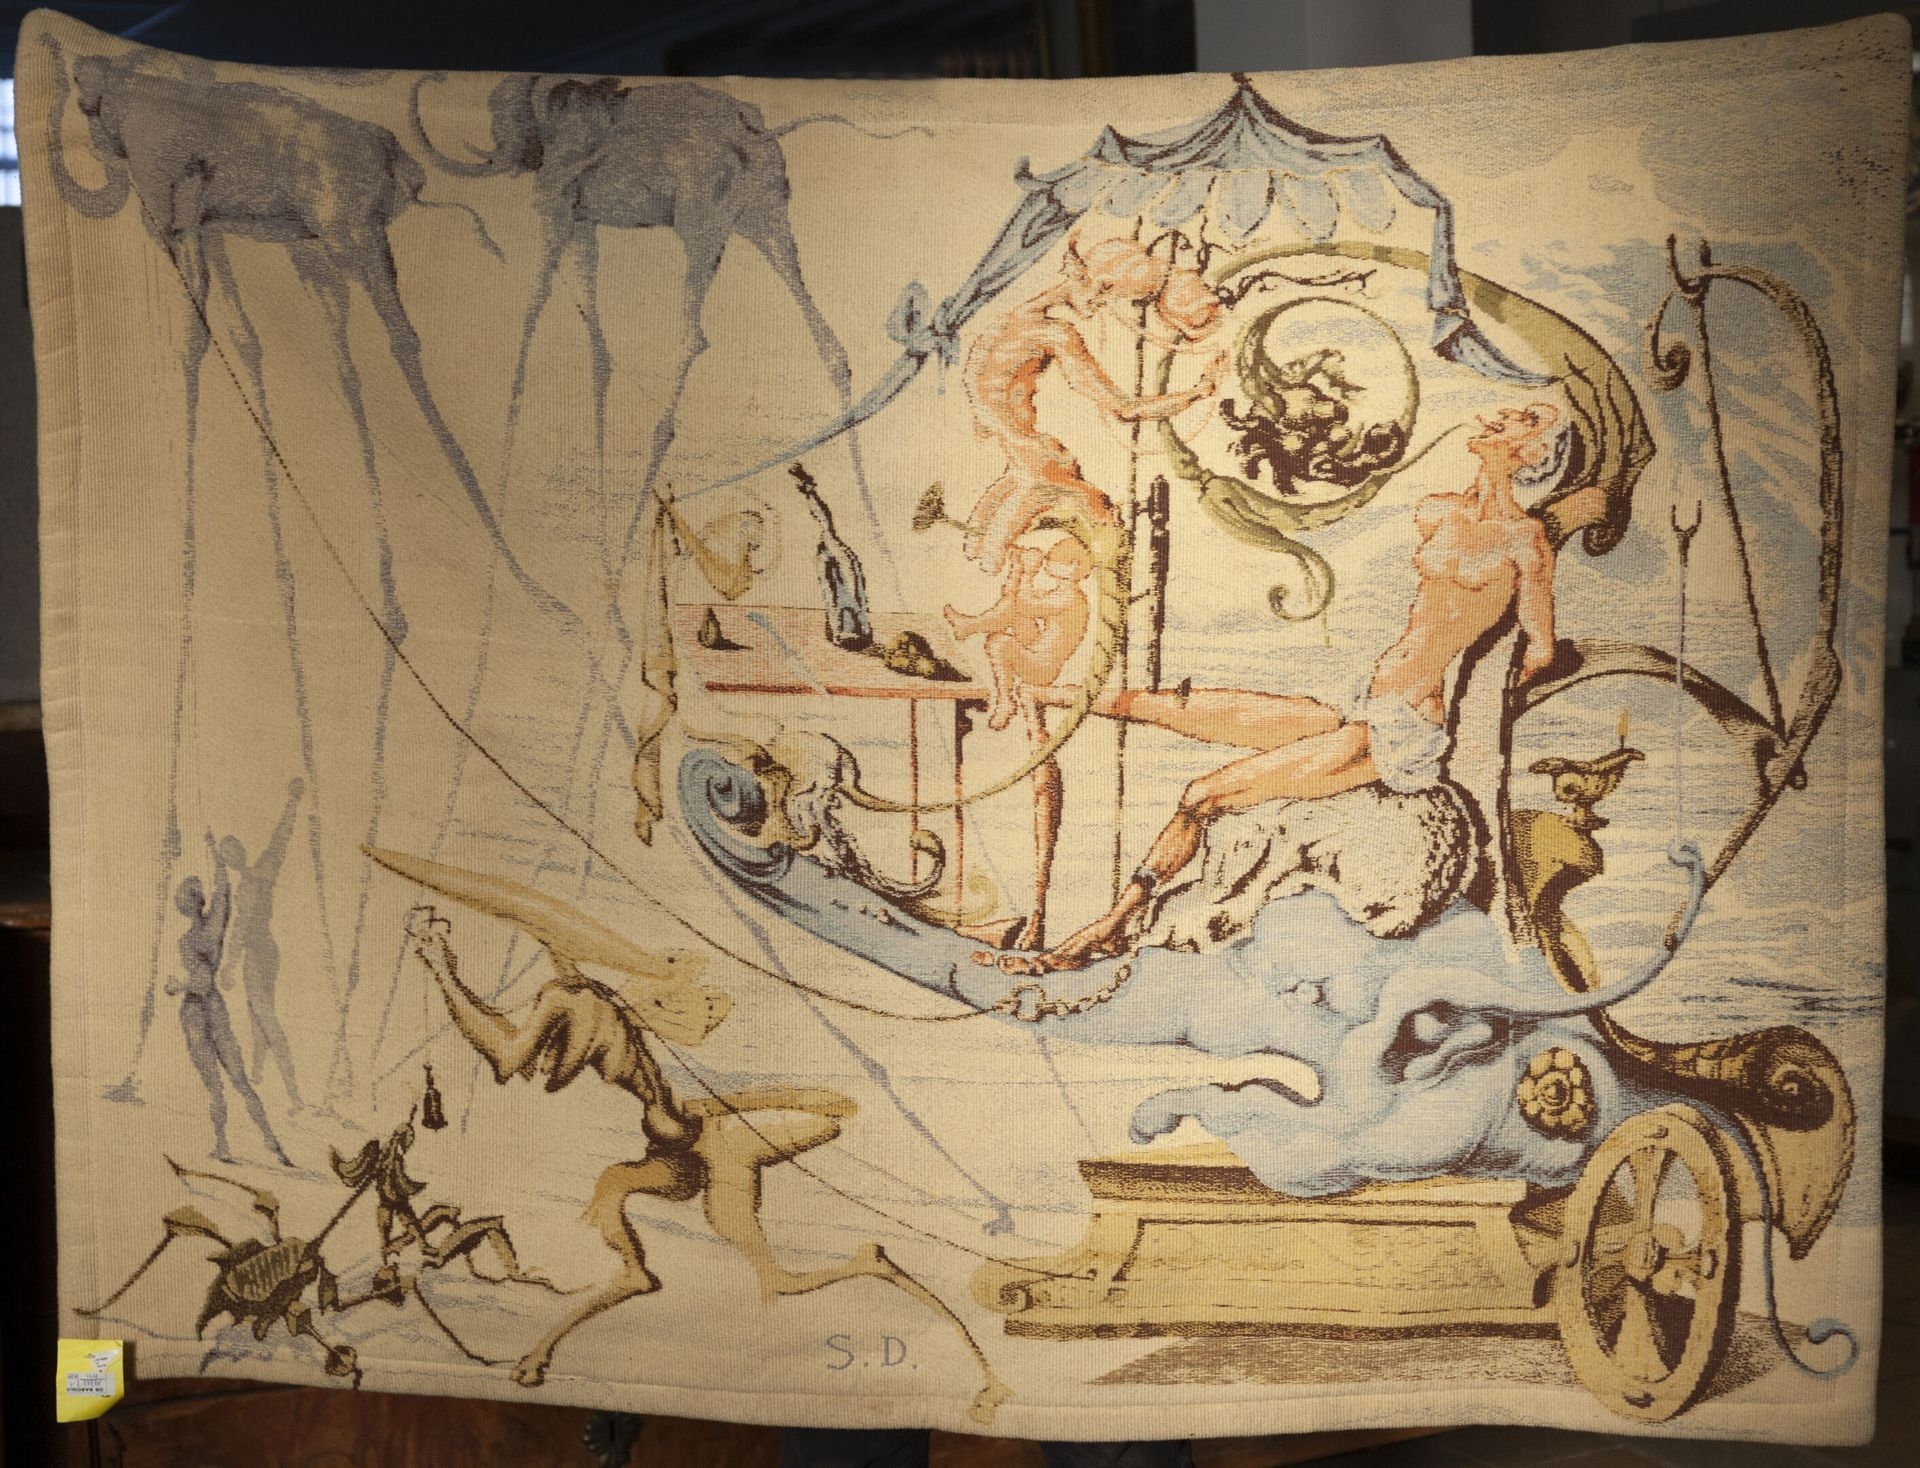 Le char de Bacchus by Salvador Dalí